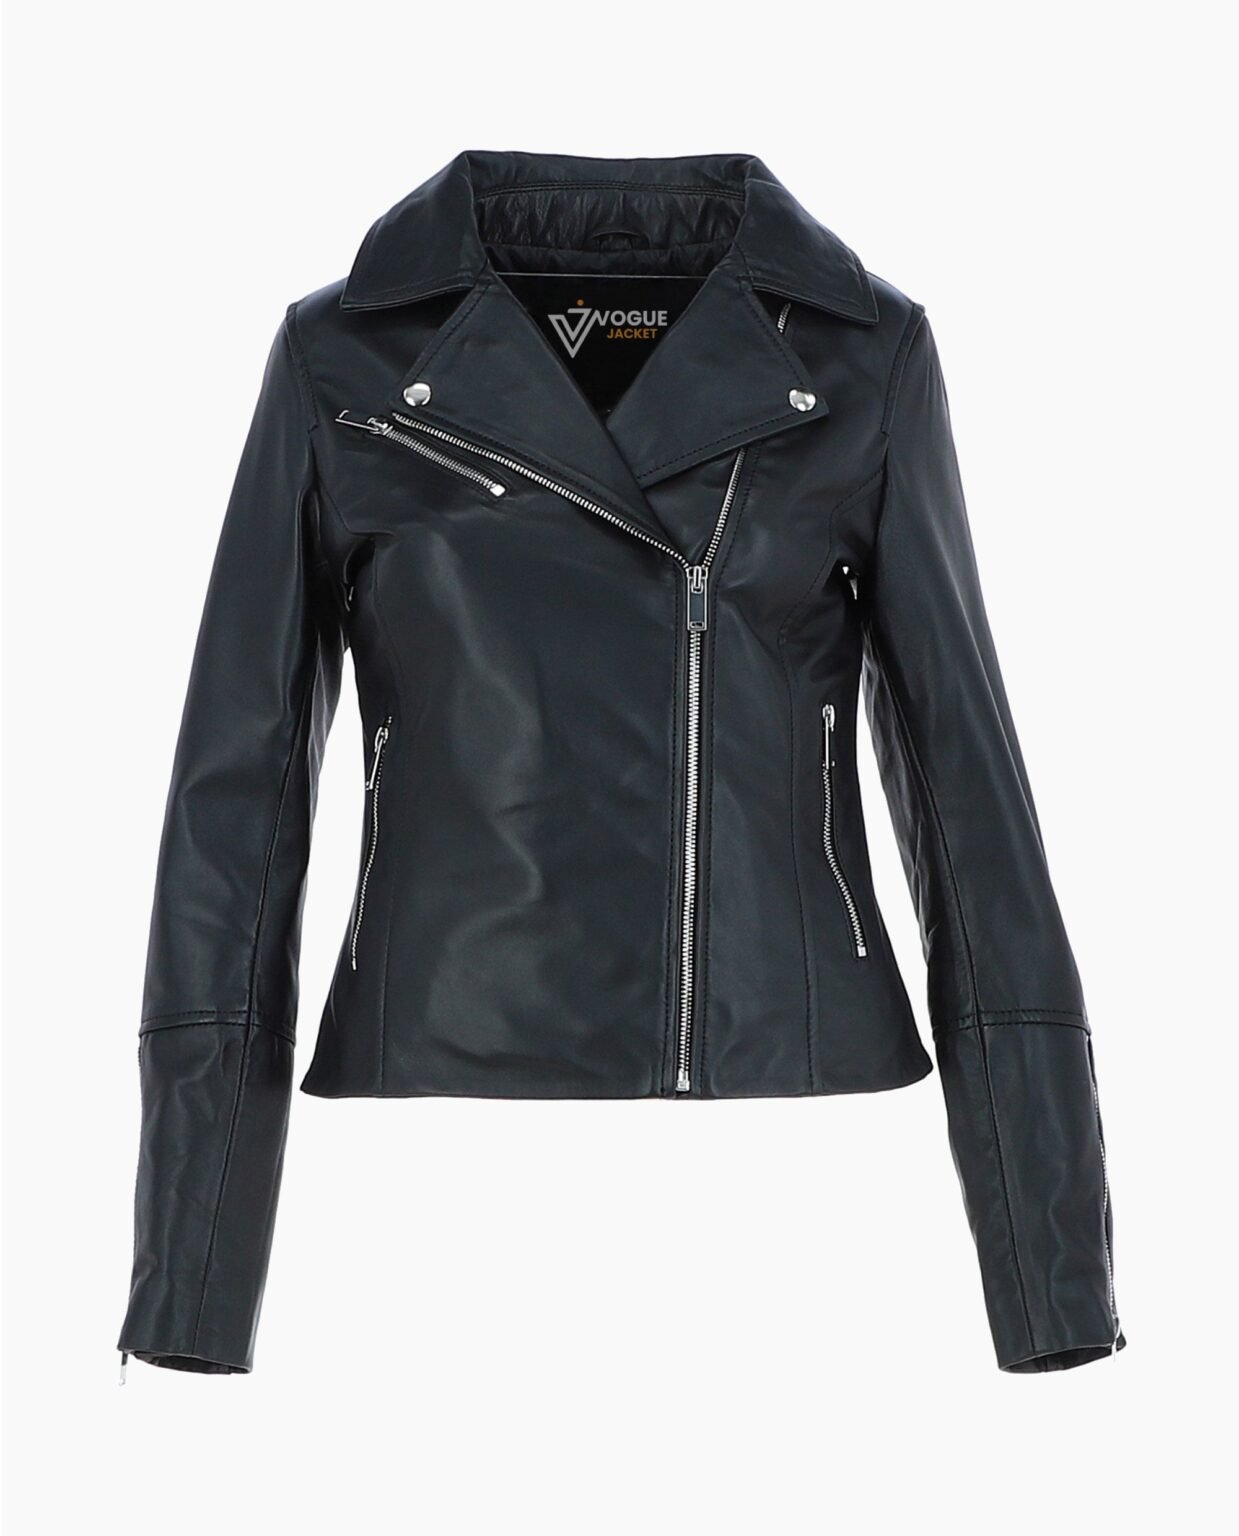 vogue-jacket-leather-biker-jacket-black-greeley-image200